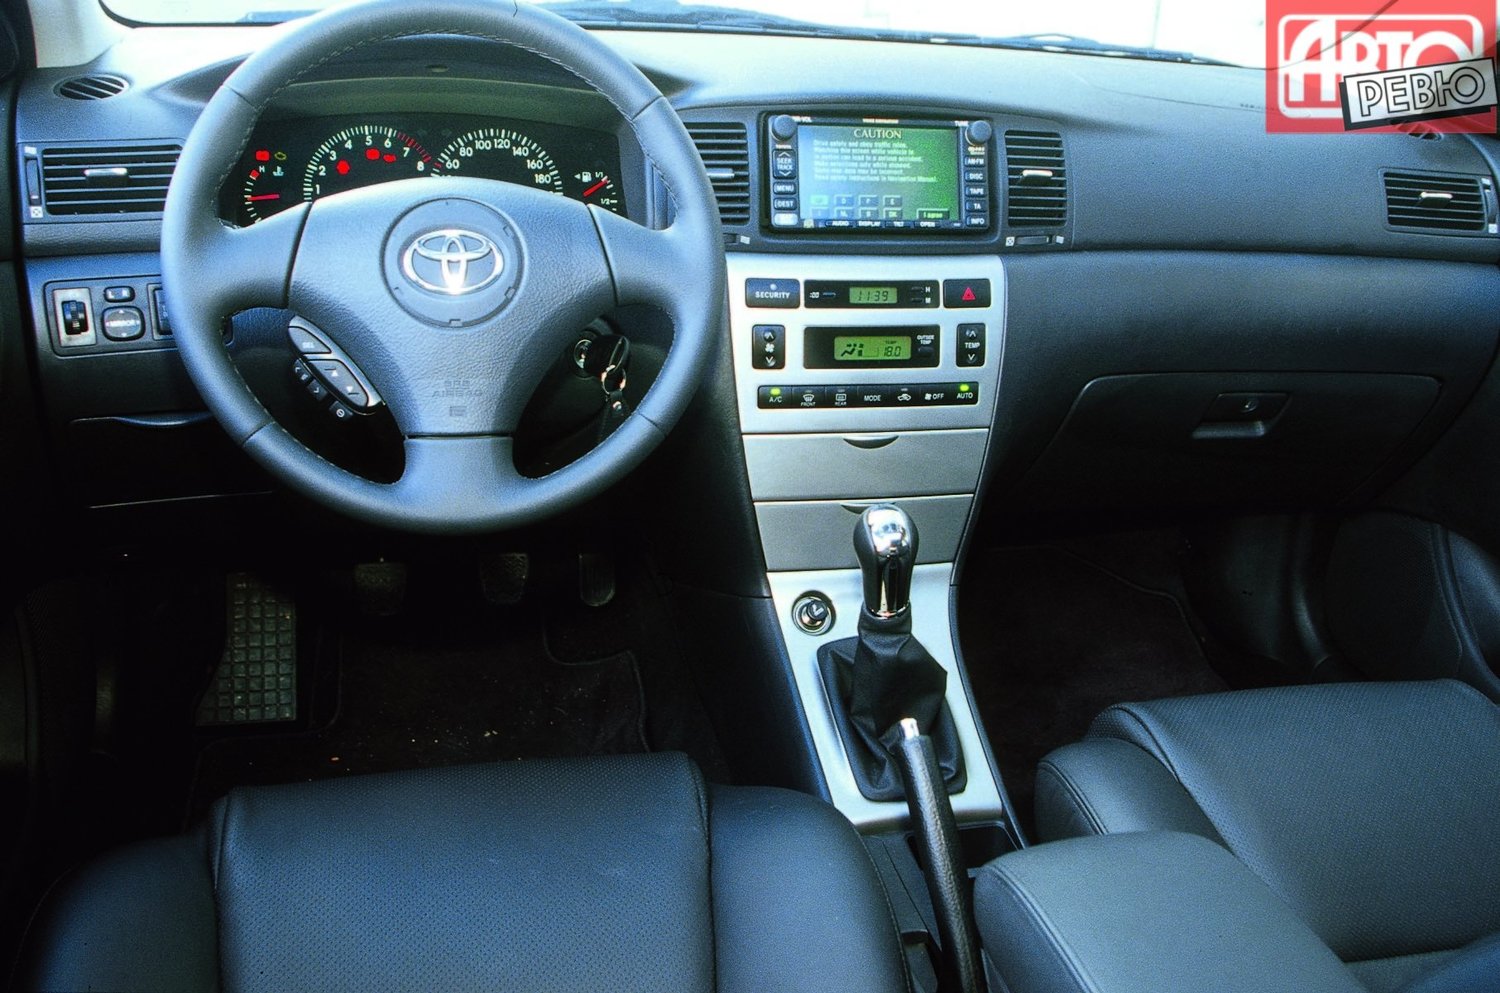 хэтчбек 3 дв. Toyota Corolla 2001 - 2004г выпуска модификация 1.4 MT (97 л.с.)